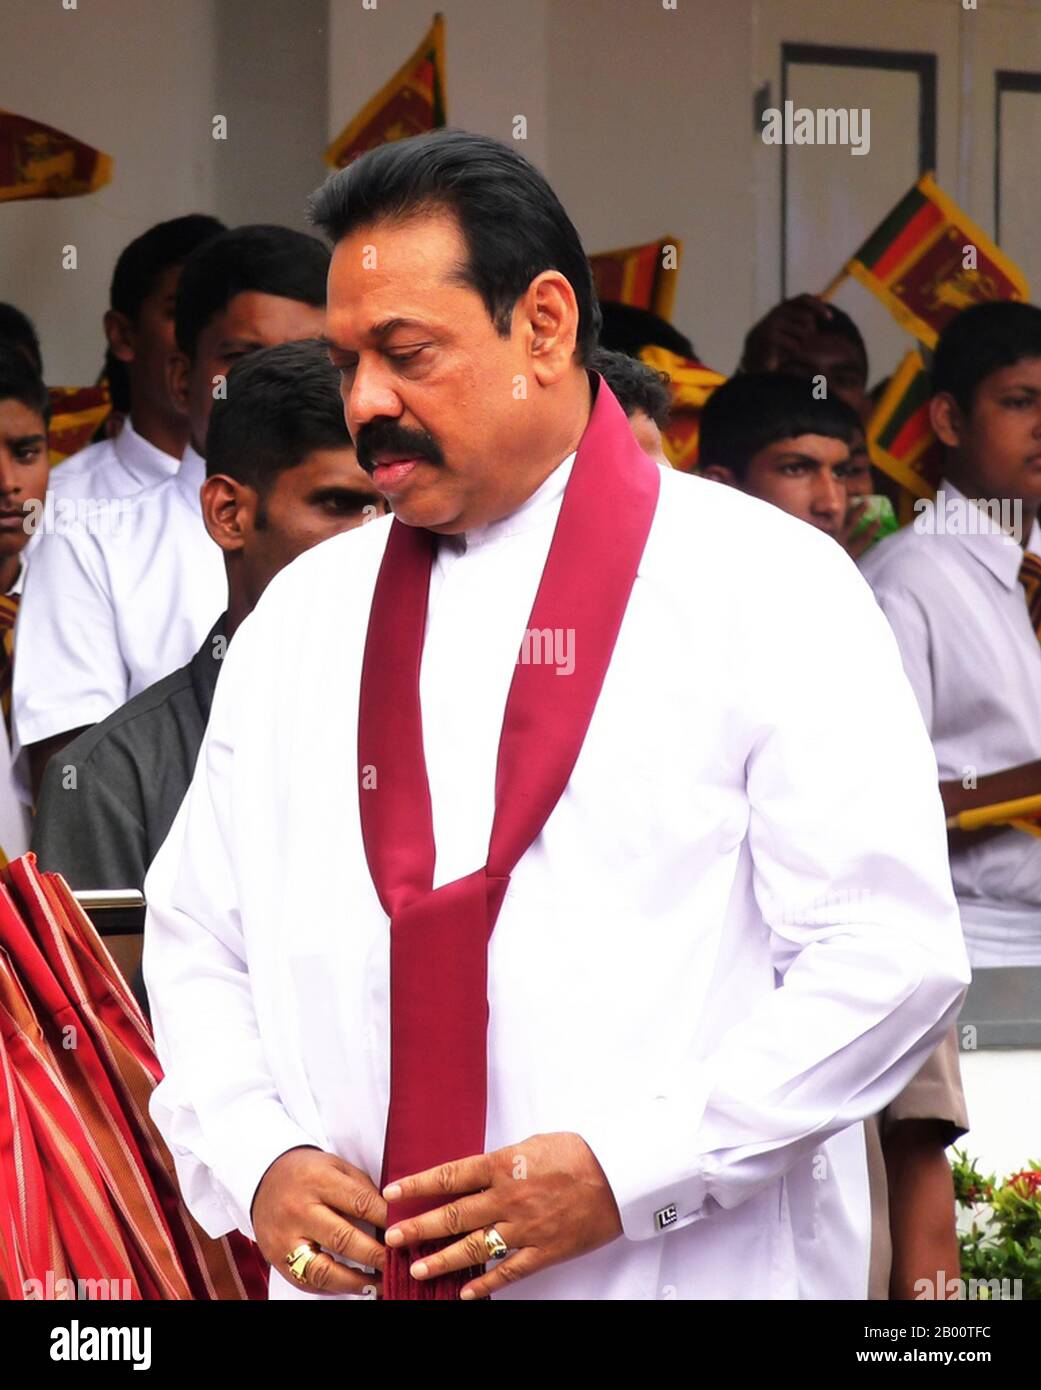 Sri Lanka: Mahendra Rajapaksa, 6. Präsident von Sri Lanka (2005- ). Foto von Rajith Vidanaarachchi (CC BY-SA 2.0 Lizenz). Percy Mahendra 'Mahinda' Rajapaksa (geboren am 18. November 1945) ist der 6. Und derzeitige Präsident von Sri Lanka und Oberbefehlshaber der Streitkräfte Sri Lankas. Rajapaksa, ein Rechtsanwalt von Beruf, wurde 1970 zum ersten Mal in das Parlament von Sri Lanka gewählt und diente vom 6. April 2004 bis zu seinem Sieg bei den Präsidentschaftswahlen 2005 als Premierminister. Am 19. November 2005 wurde er für eine sechsjährige Amtszeit als Präsident vereidigt. Stockfoto